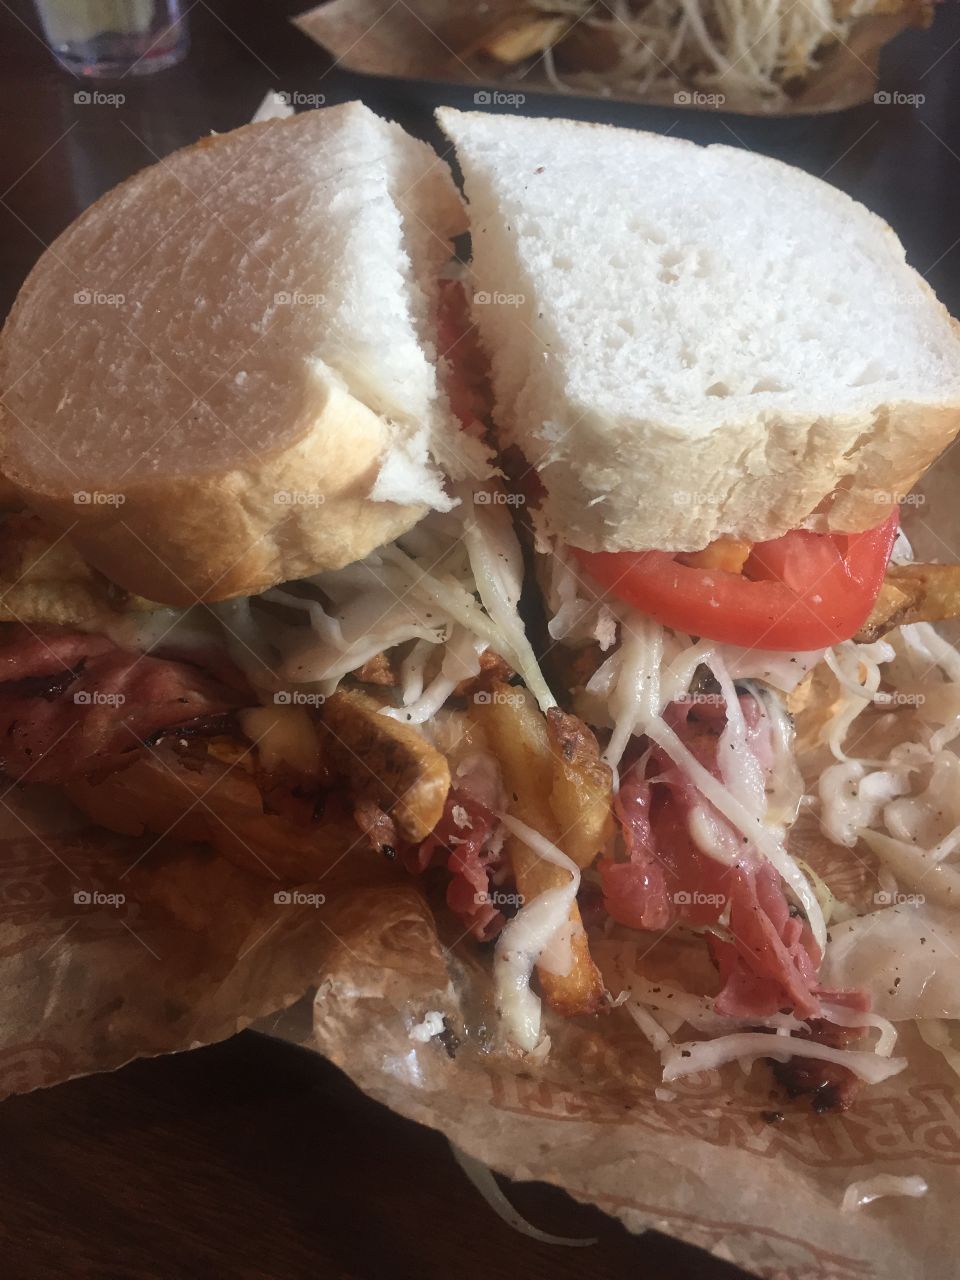 Primantis Almost Famous Sandwiches 